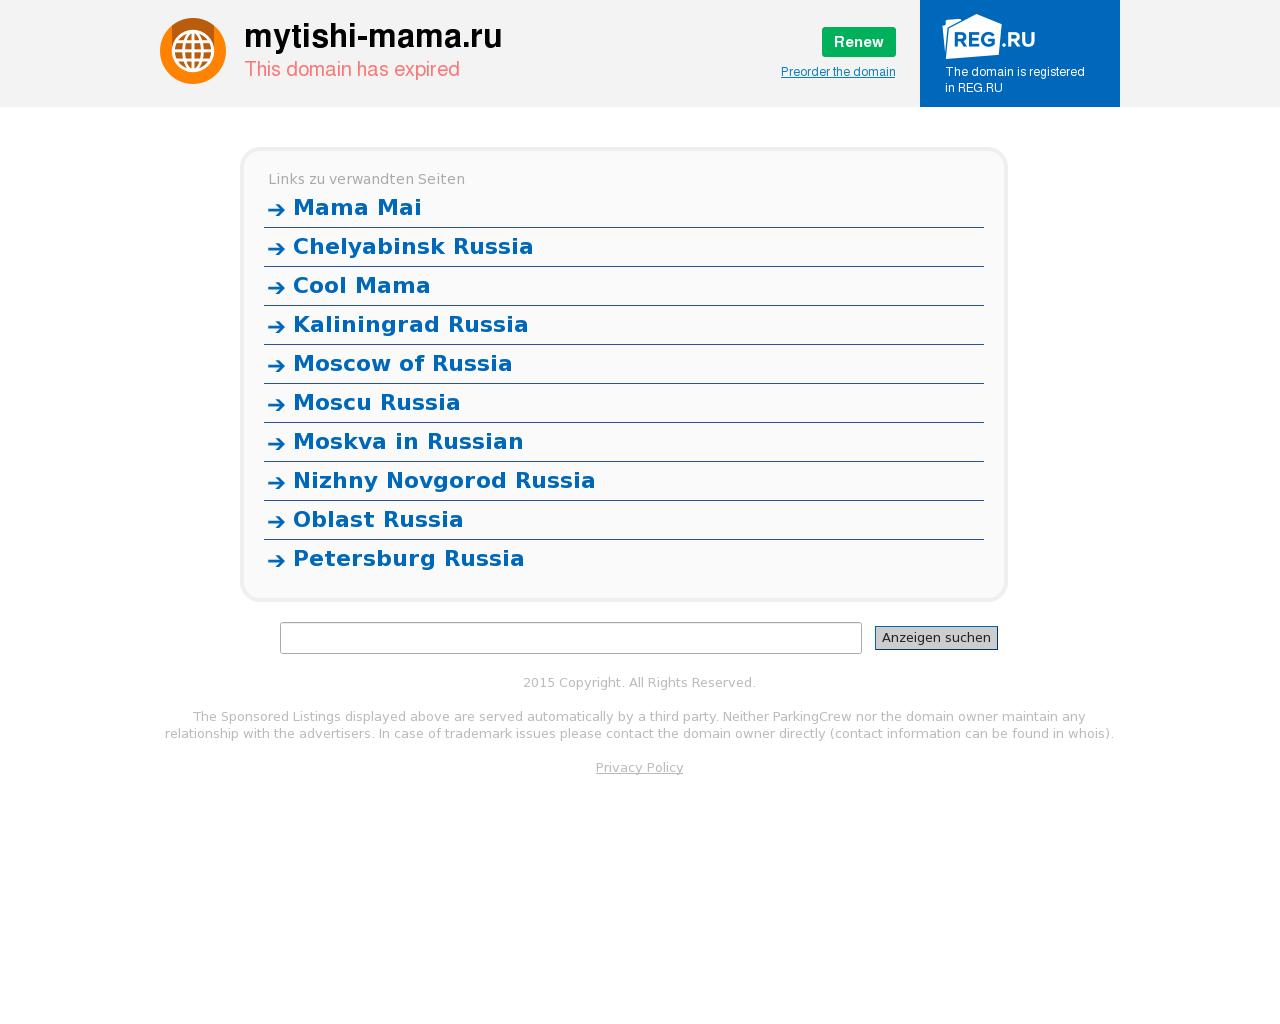 Изображение сайта mytishi-mama.ru в разрешении 1280x1024